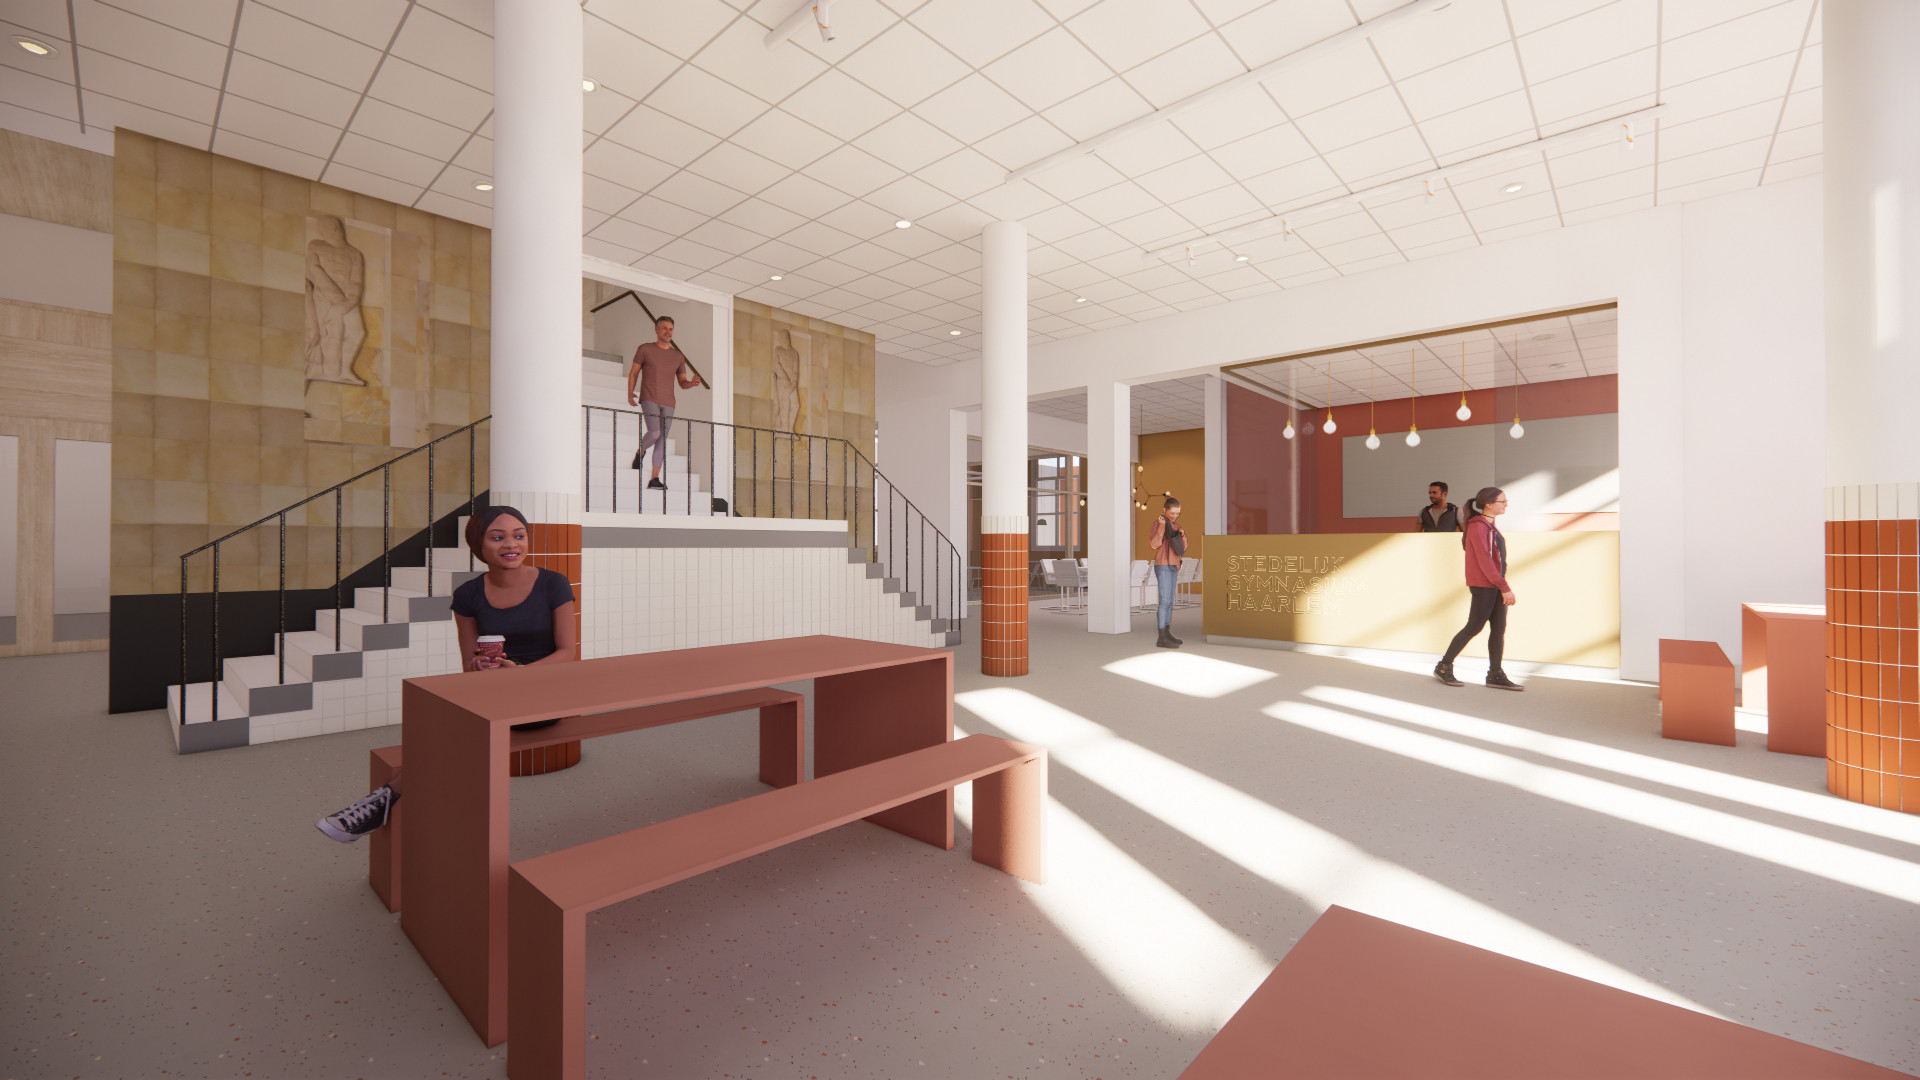 Impressie nieuwe duurzame leeromgeving Stedelijk Gymnasium Haarlem